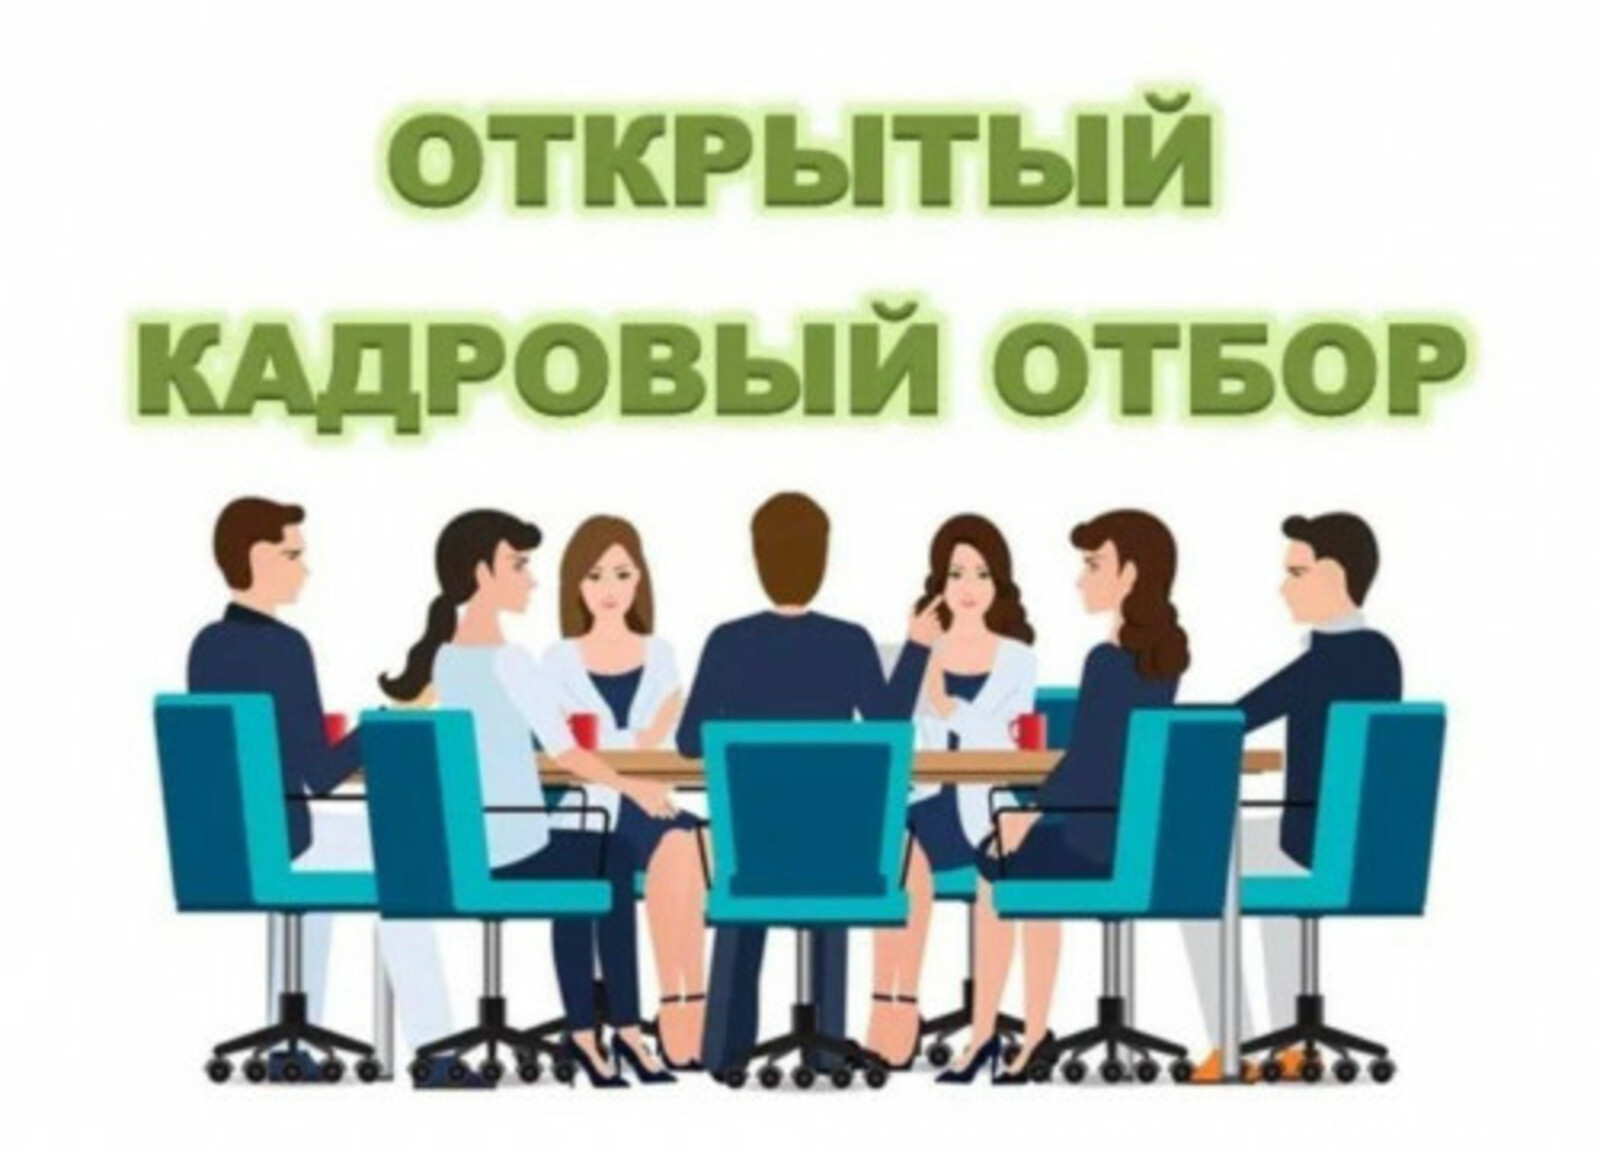 19 января во всех центрах занятости населения Башкортостана пройдет открытый кадровый отбор на крупнейшие предприятия республики